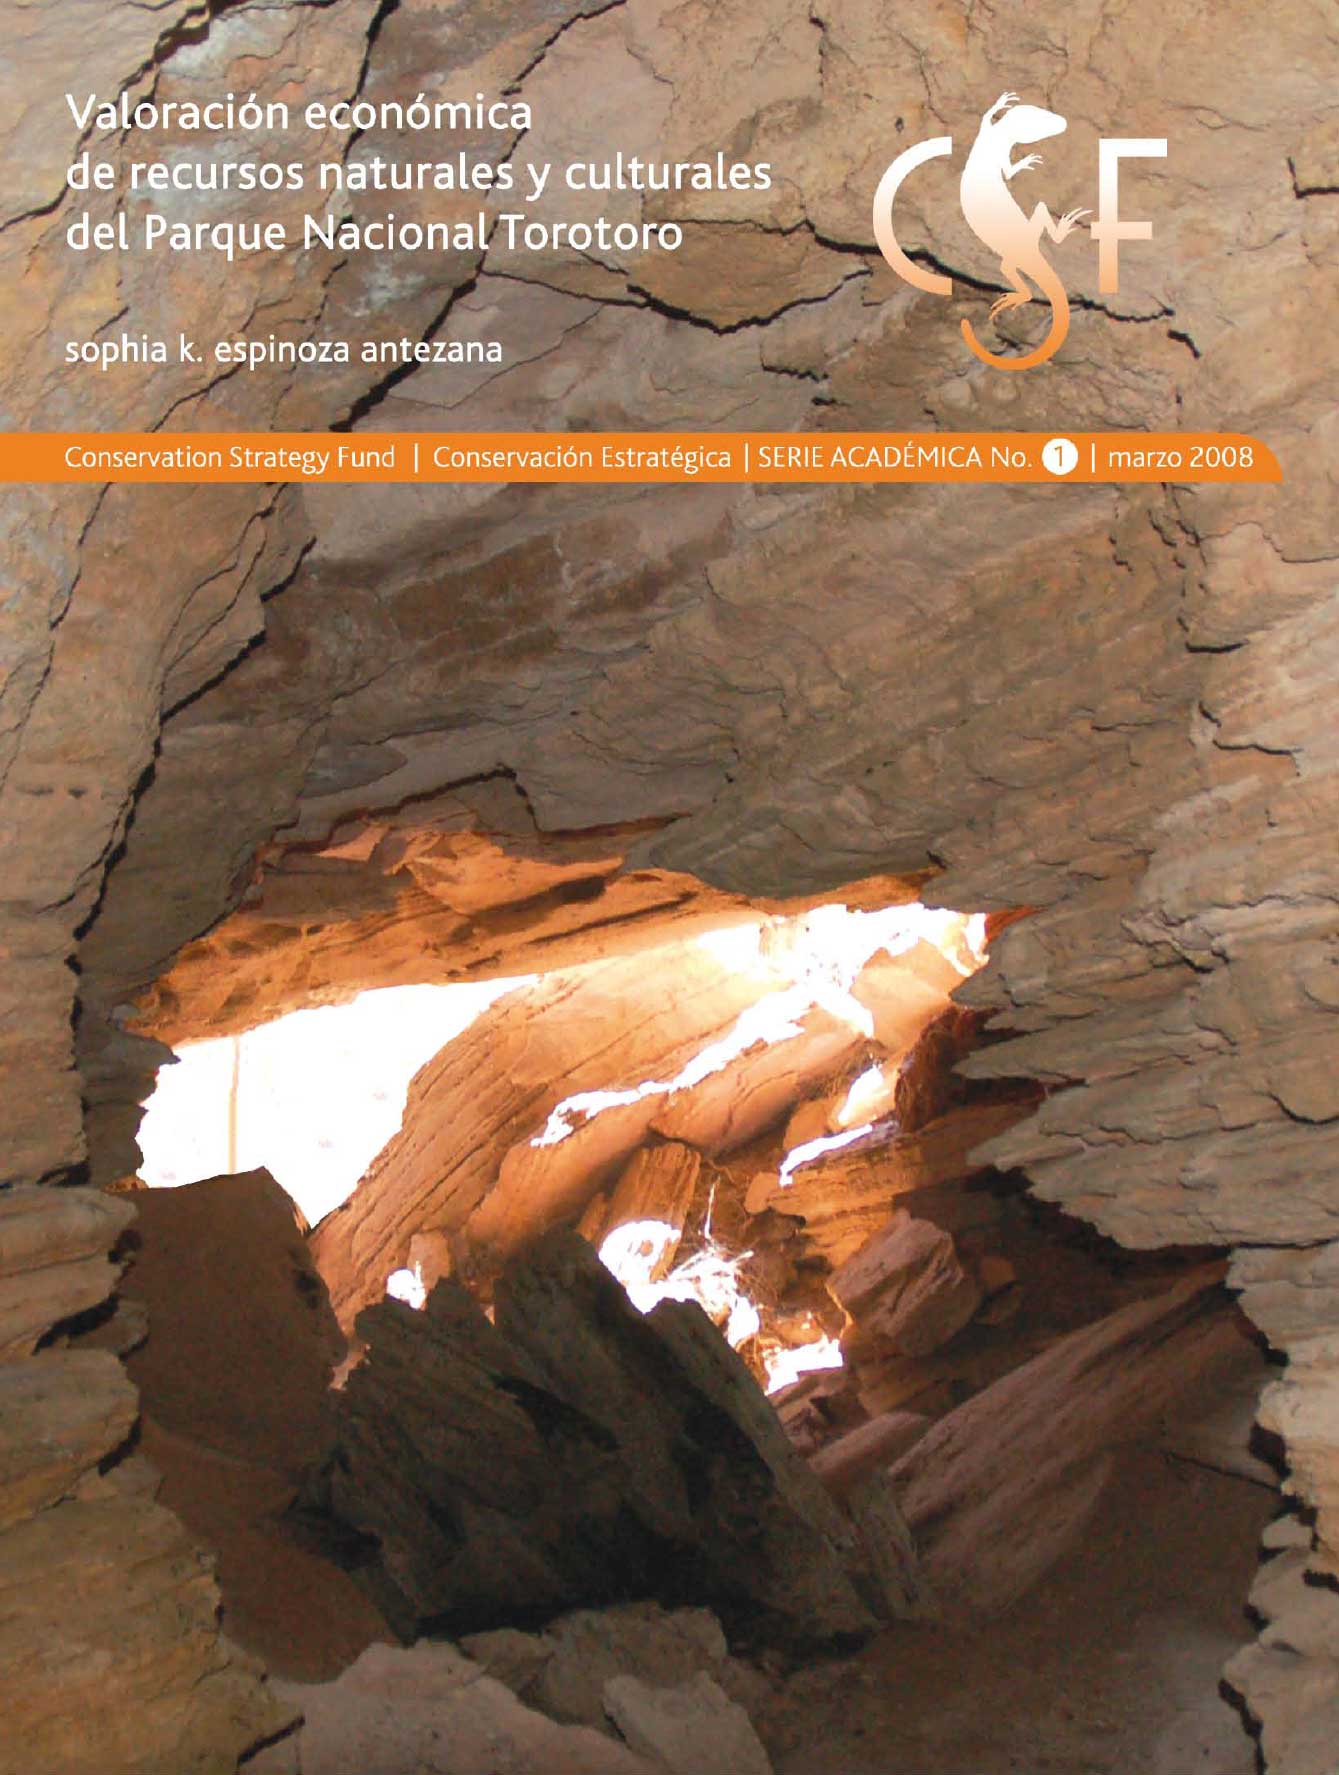 Photo of Caverna de Murcielagos